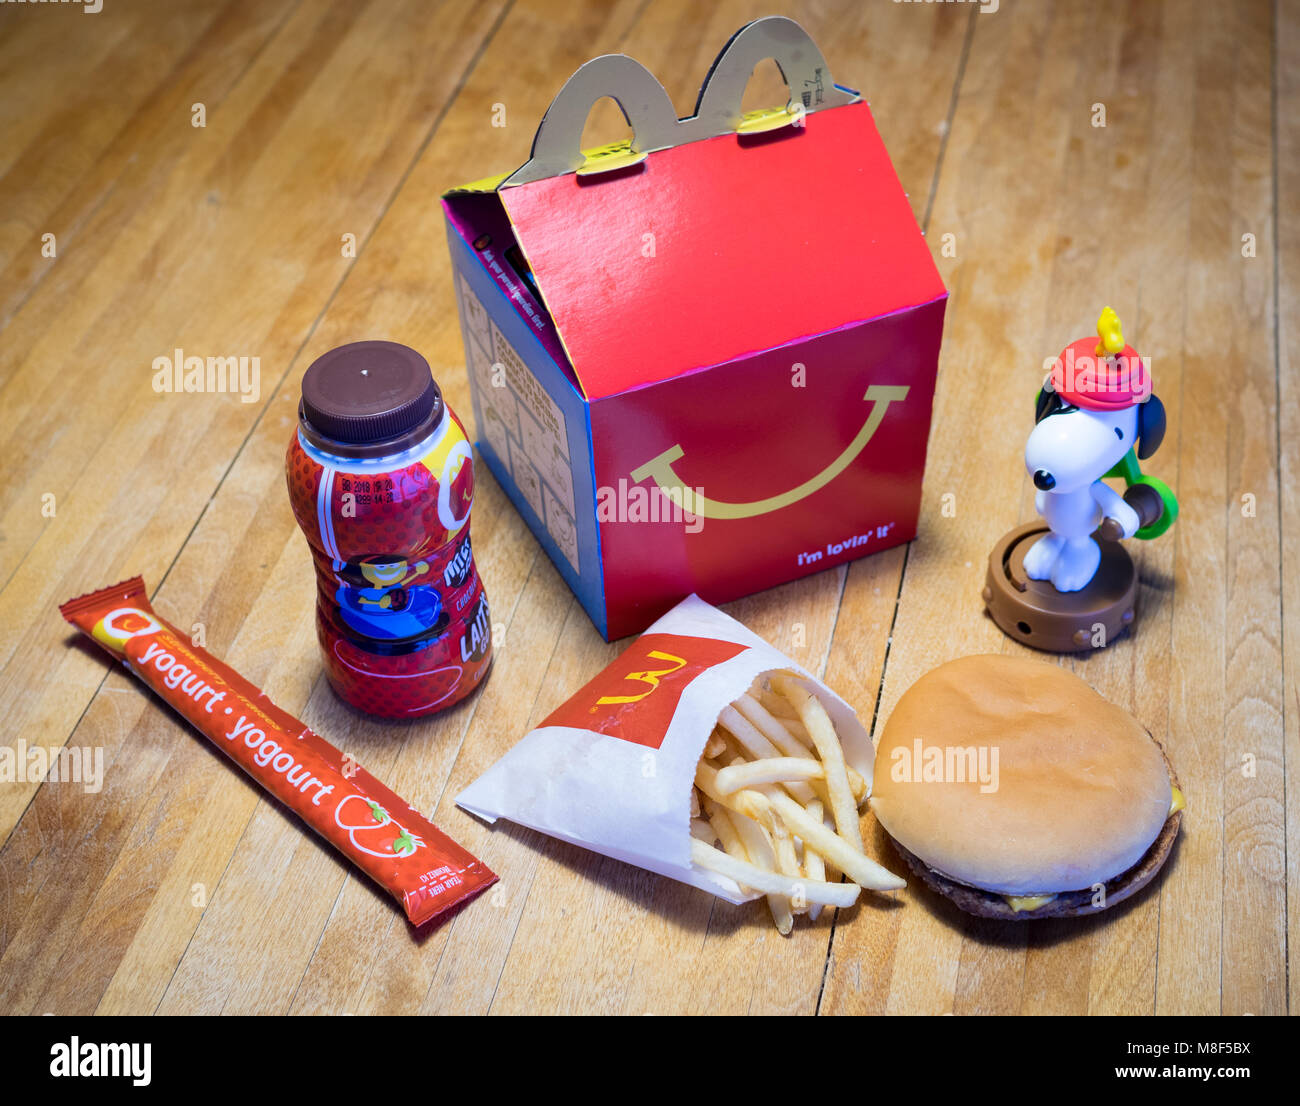 Ein McDonald's Happy Meal mit einem Cheeseburger, Pommes frites,  Schokolade, Milch, Joghurt, und Snoopy Spielzeug Stockfotografie - Alamy